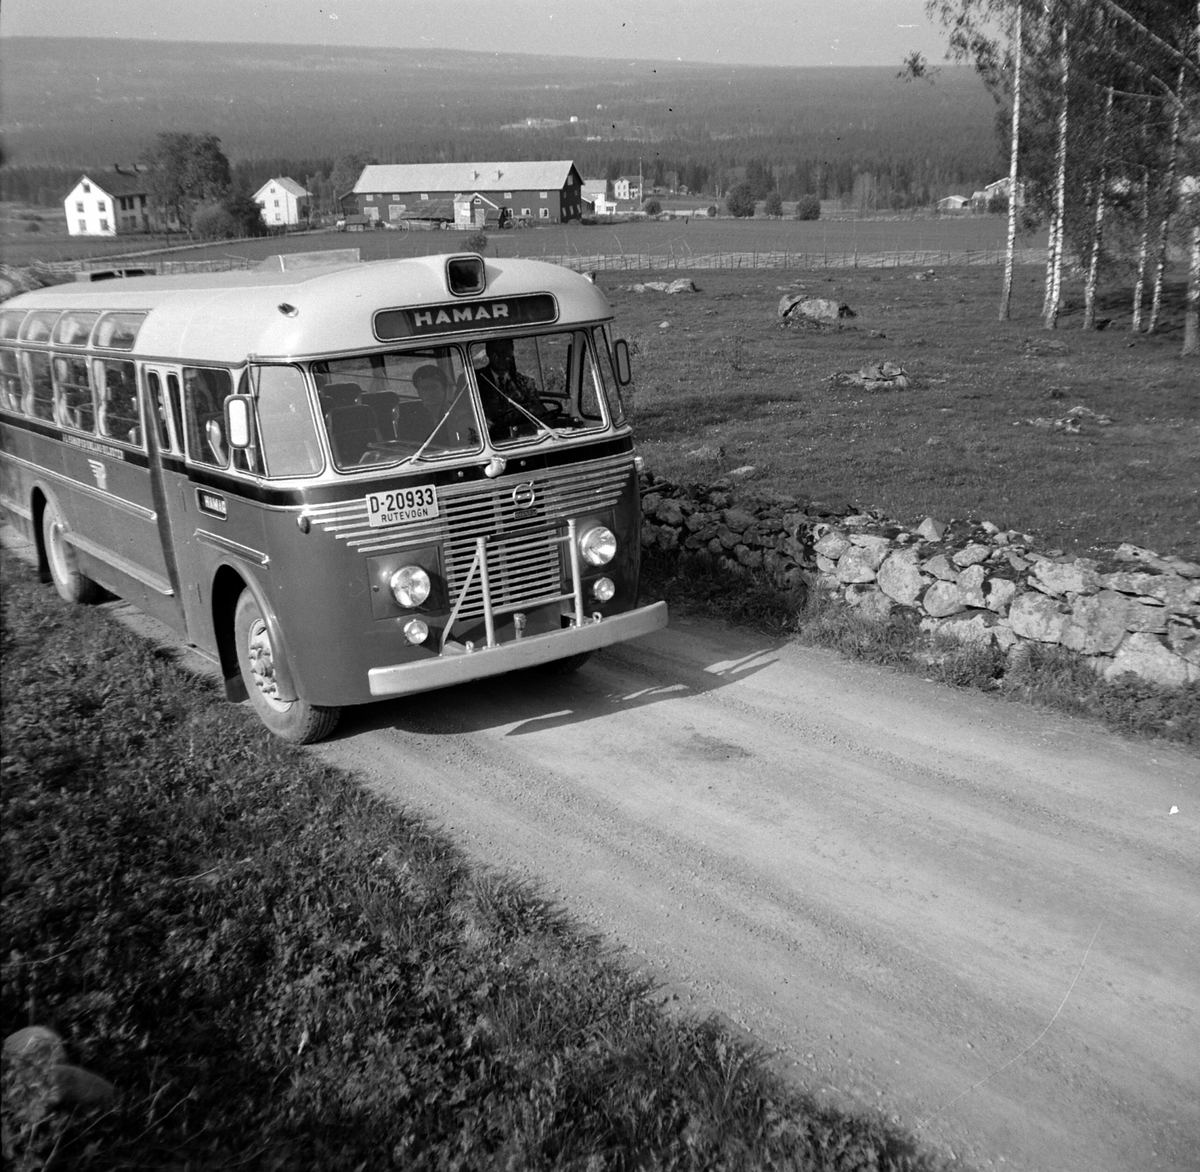 Buss fra Hamar og Omland Bilruter. Volvo type B 725. Med reg. nr. D-20933 med Knudsen karosseri. Bussen ble først registrert registrert 20. 5. 1954. 